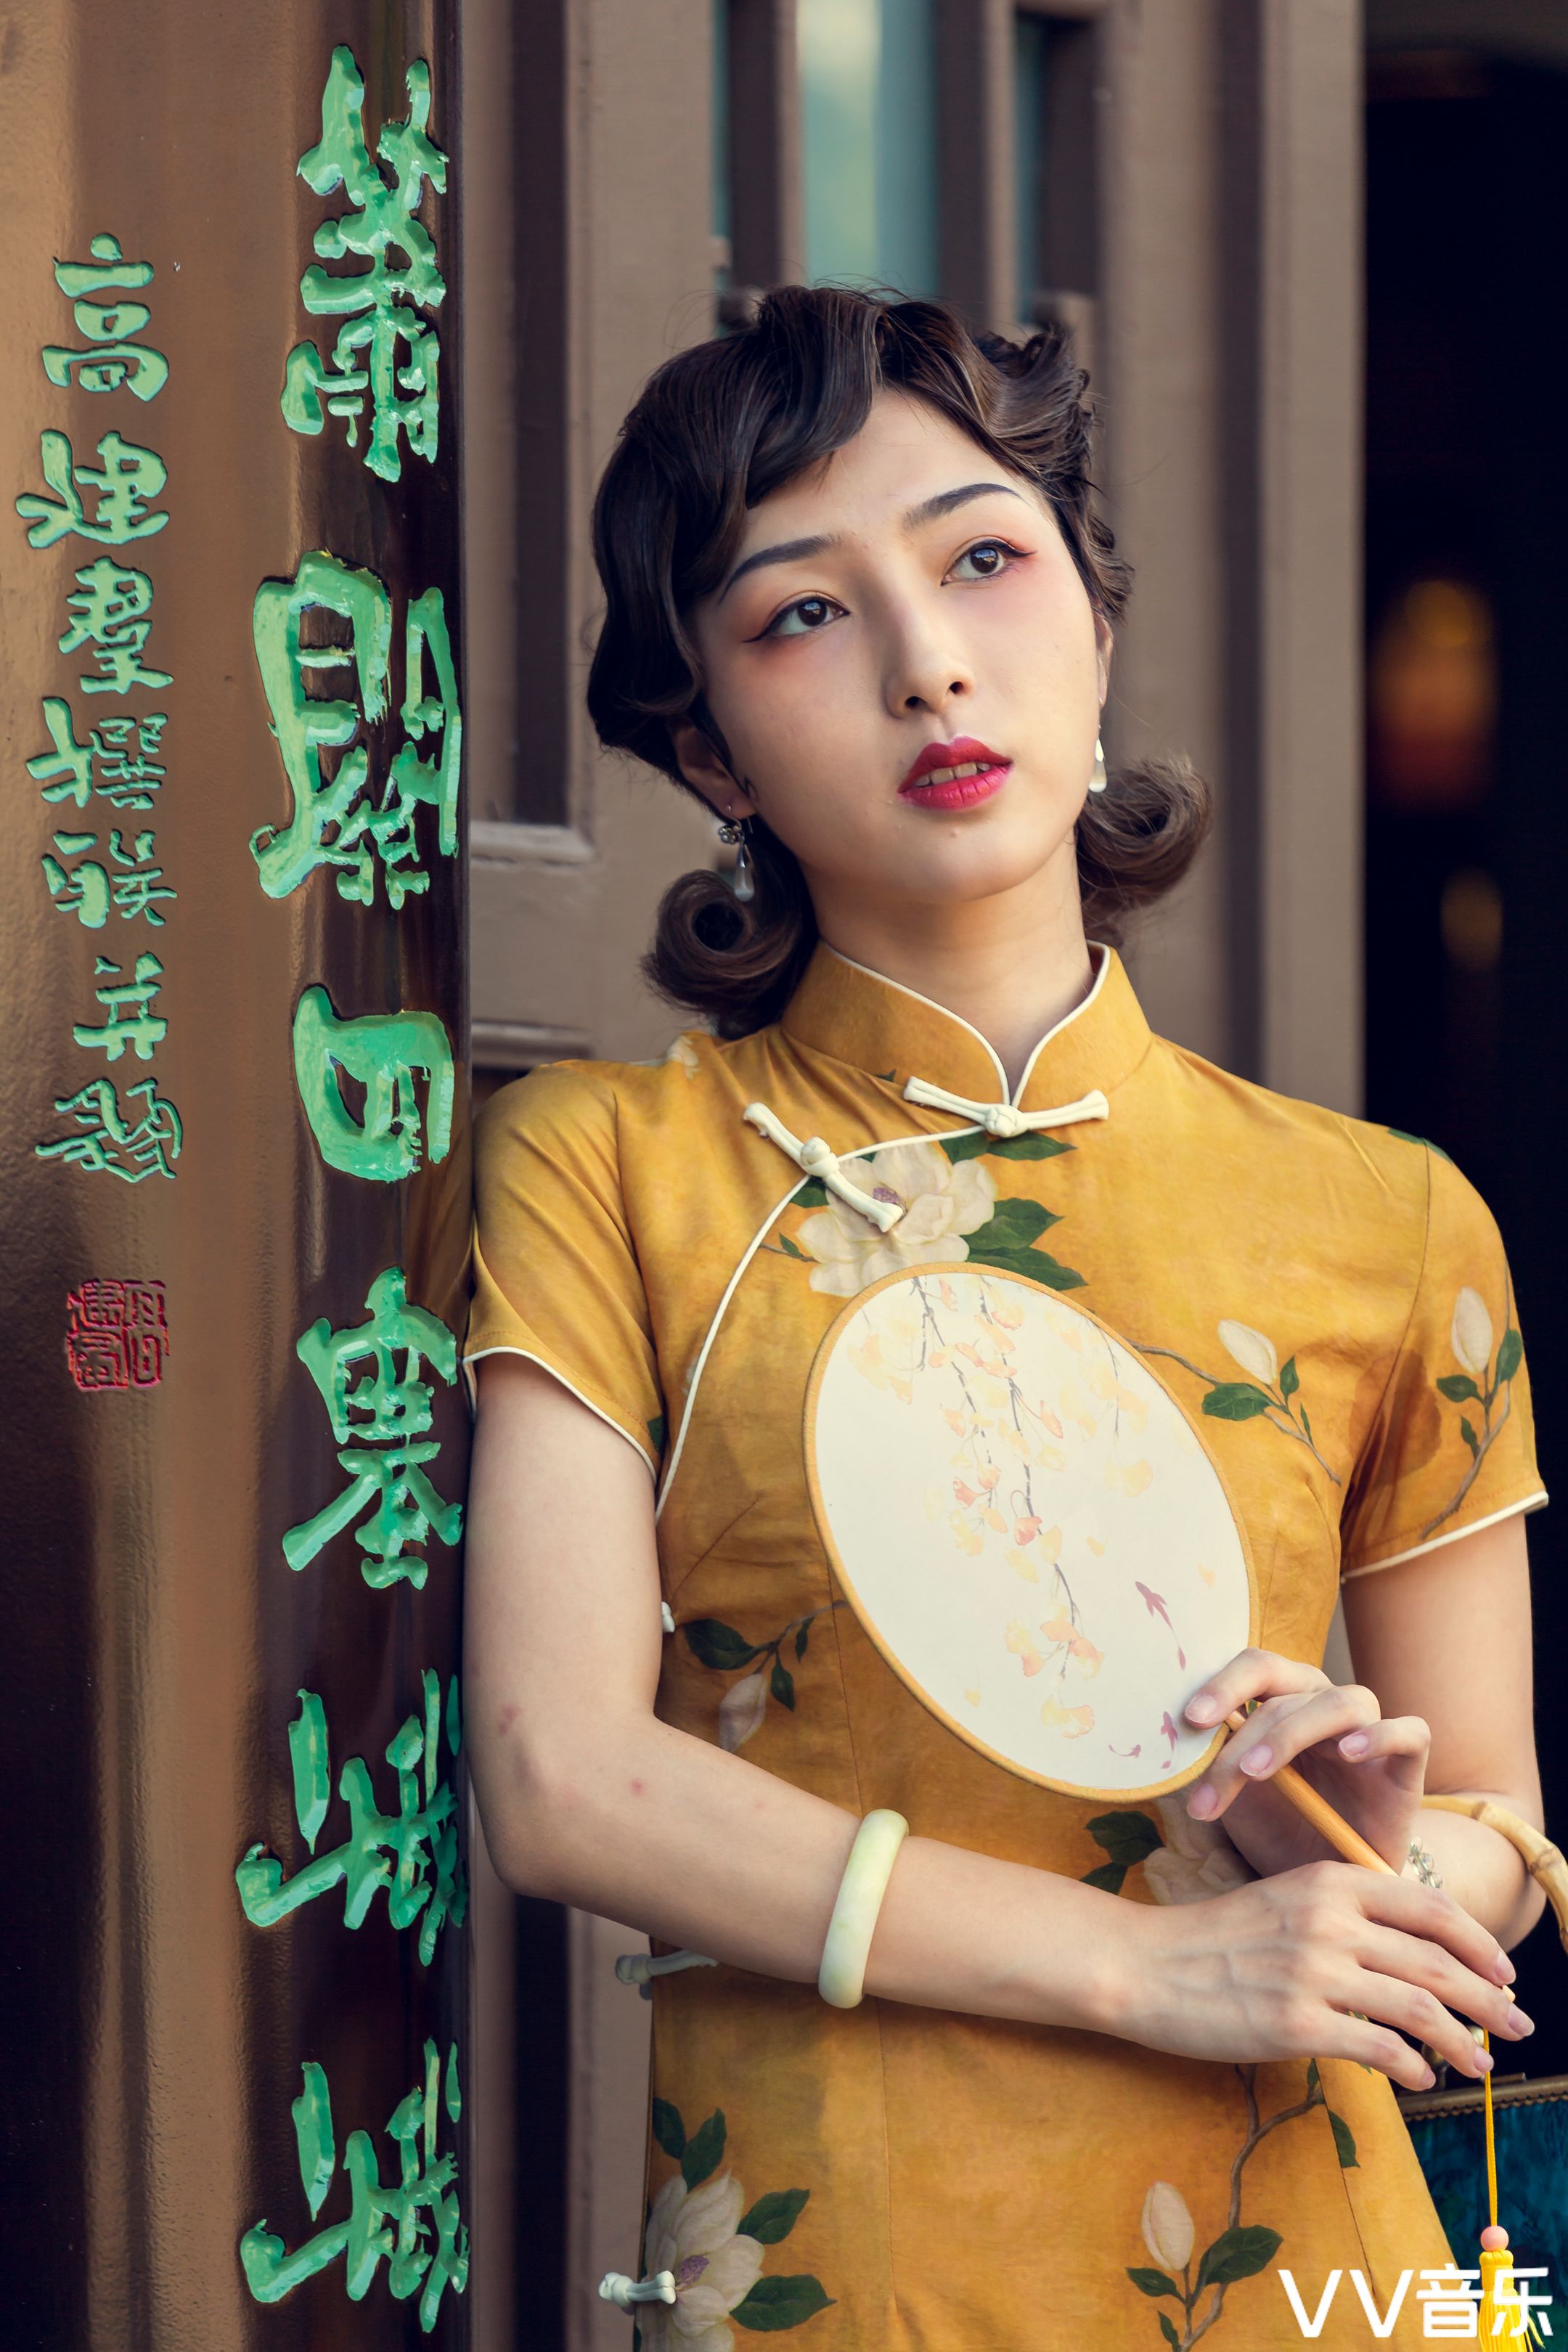 旗袍人像|中华摄影网优秀摄影师摄影作品微刊第六十一期